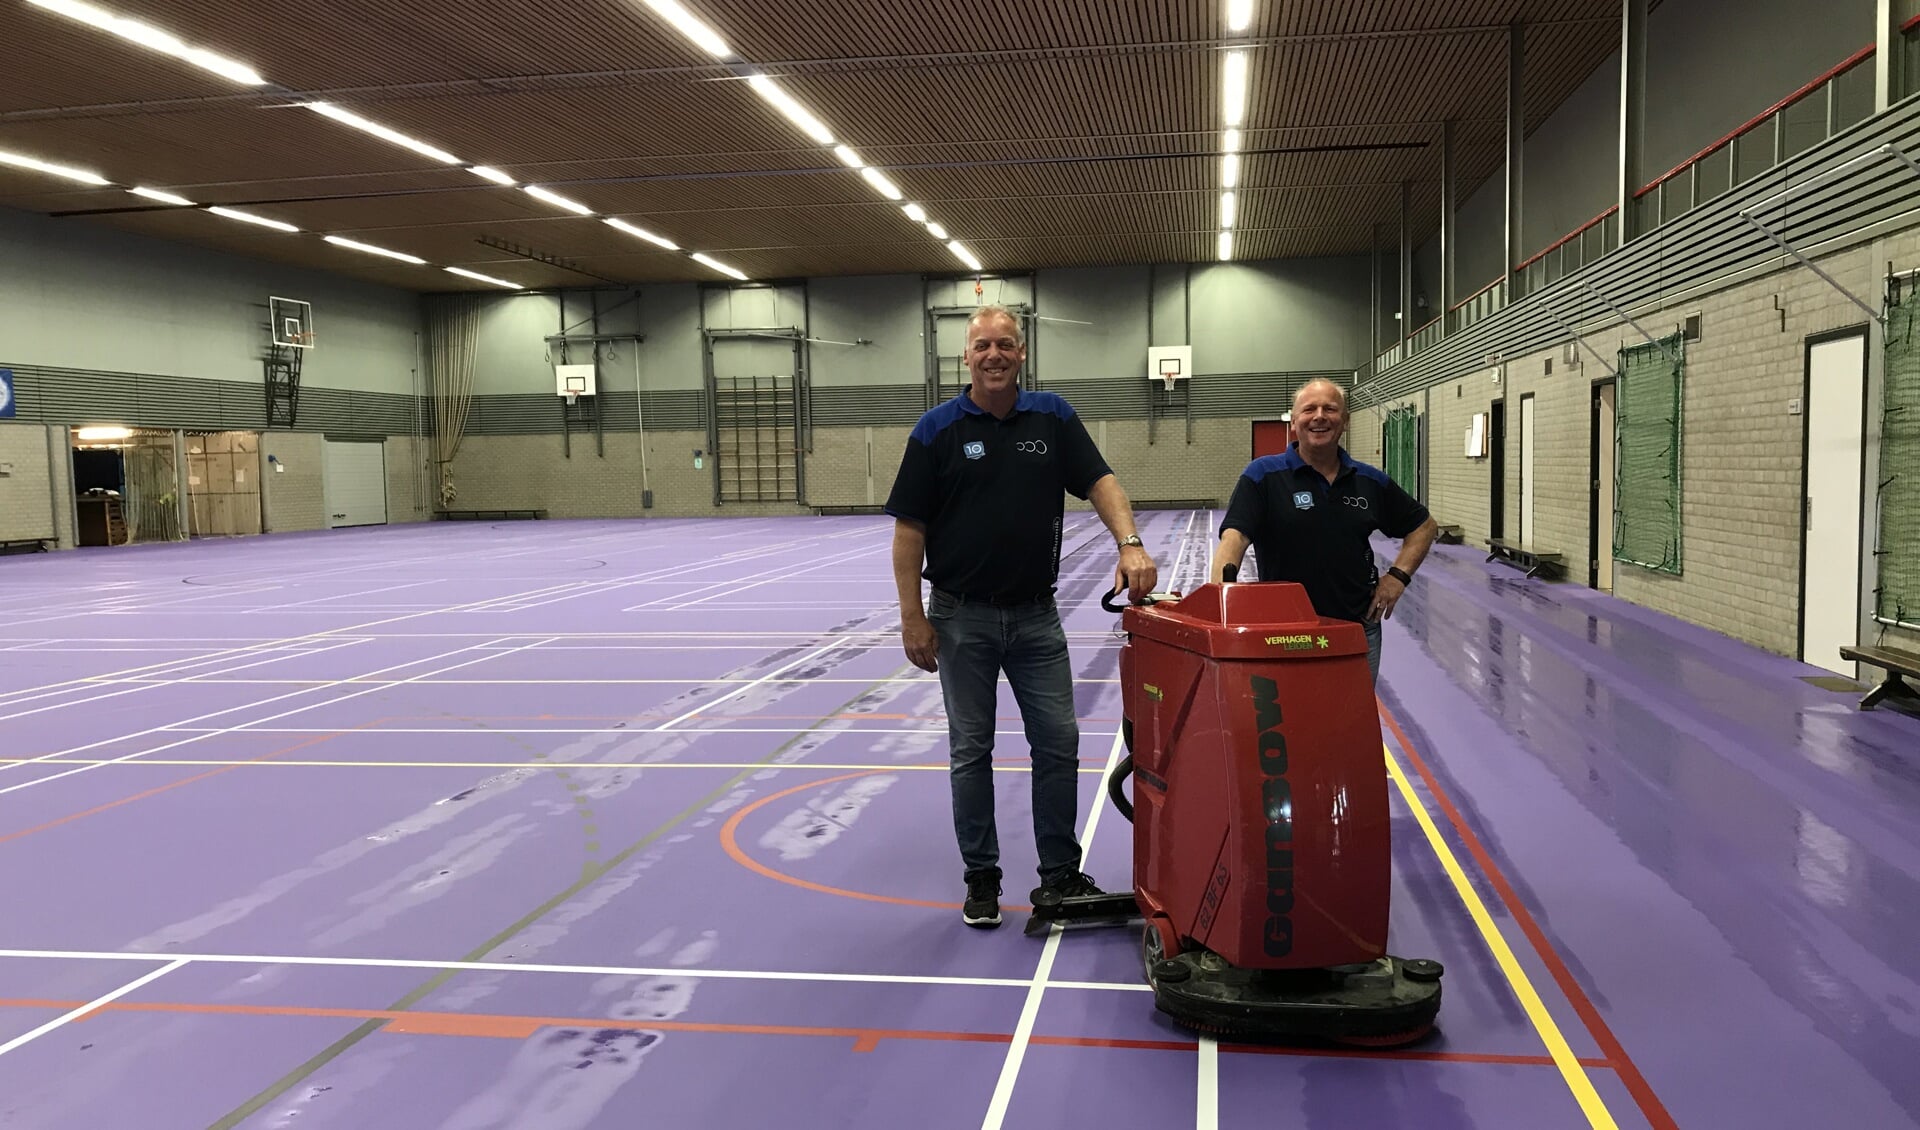 Sporthuis medewerkers Peter Goes (links) en Marcel Miltenburg zijn enthousiast over de nieuwe vloer, die hier de eerste schoonmaakbehandeling heeft gehad.